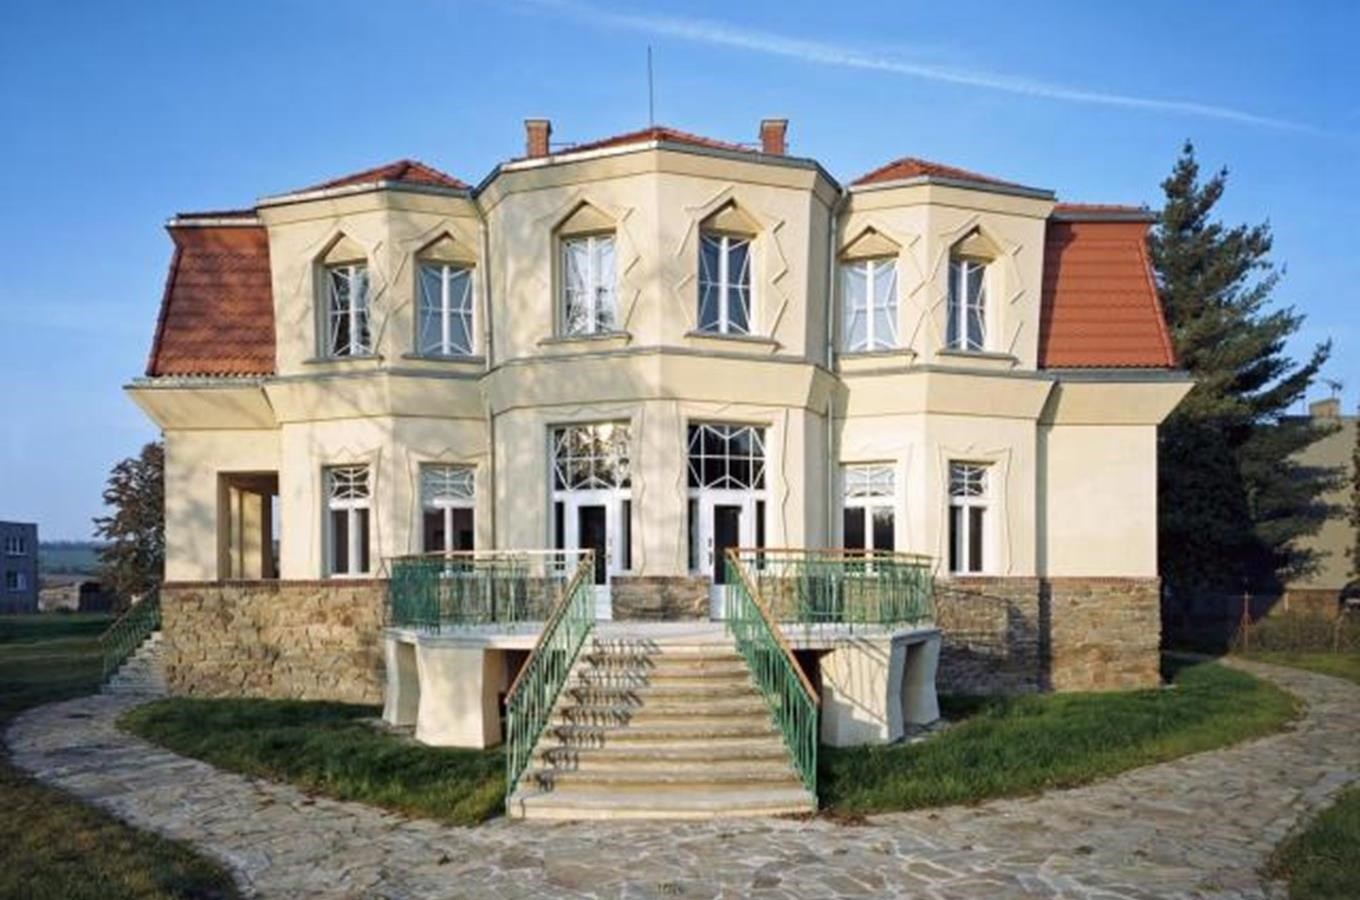 Bauerova vila – Muzeum Josefa Gočára v Libodřicích u Kolína